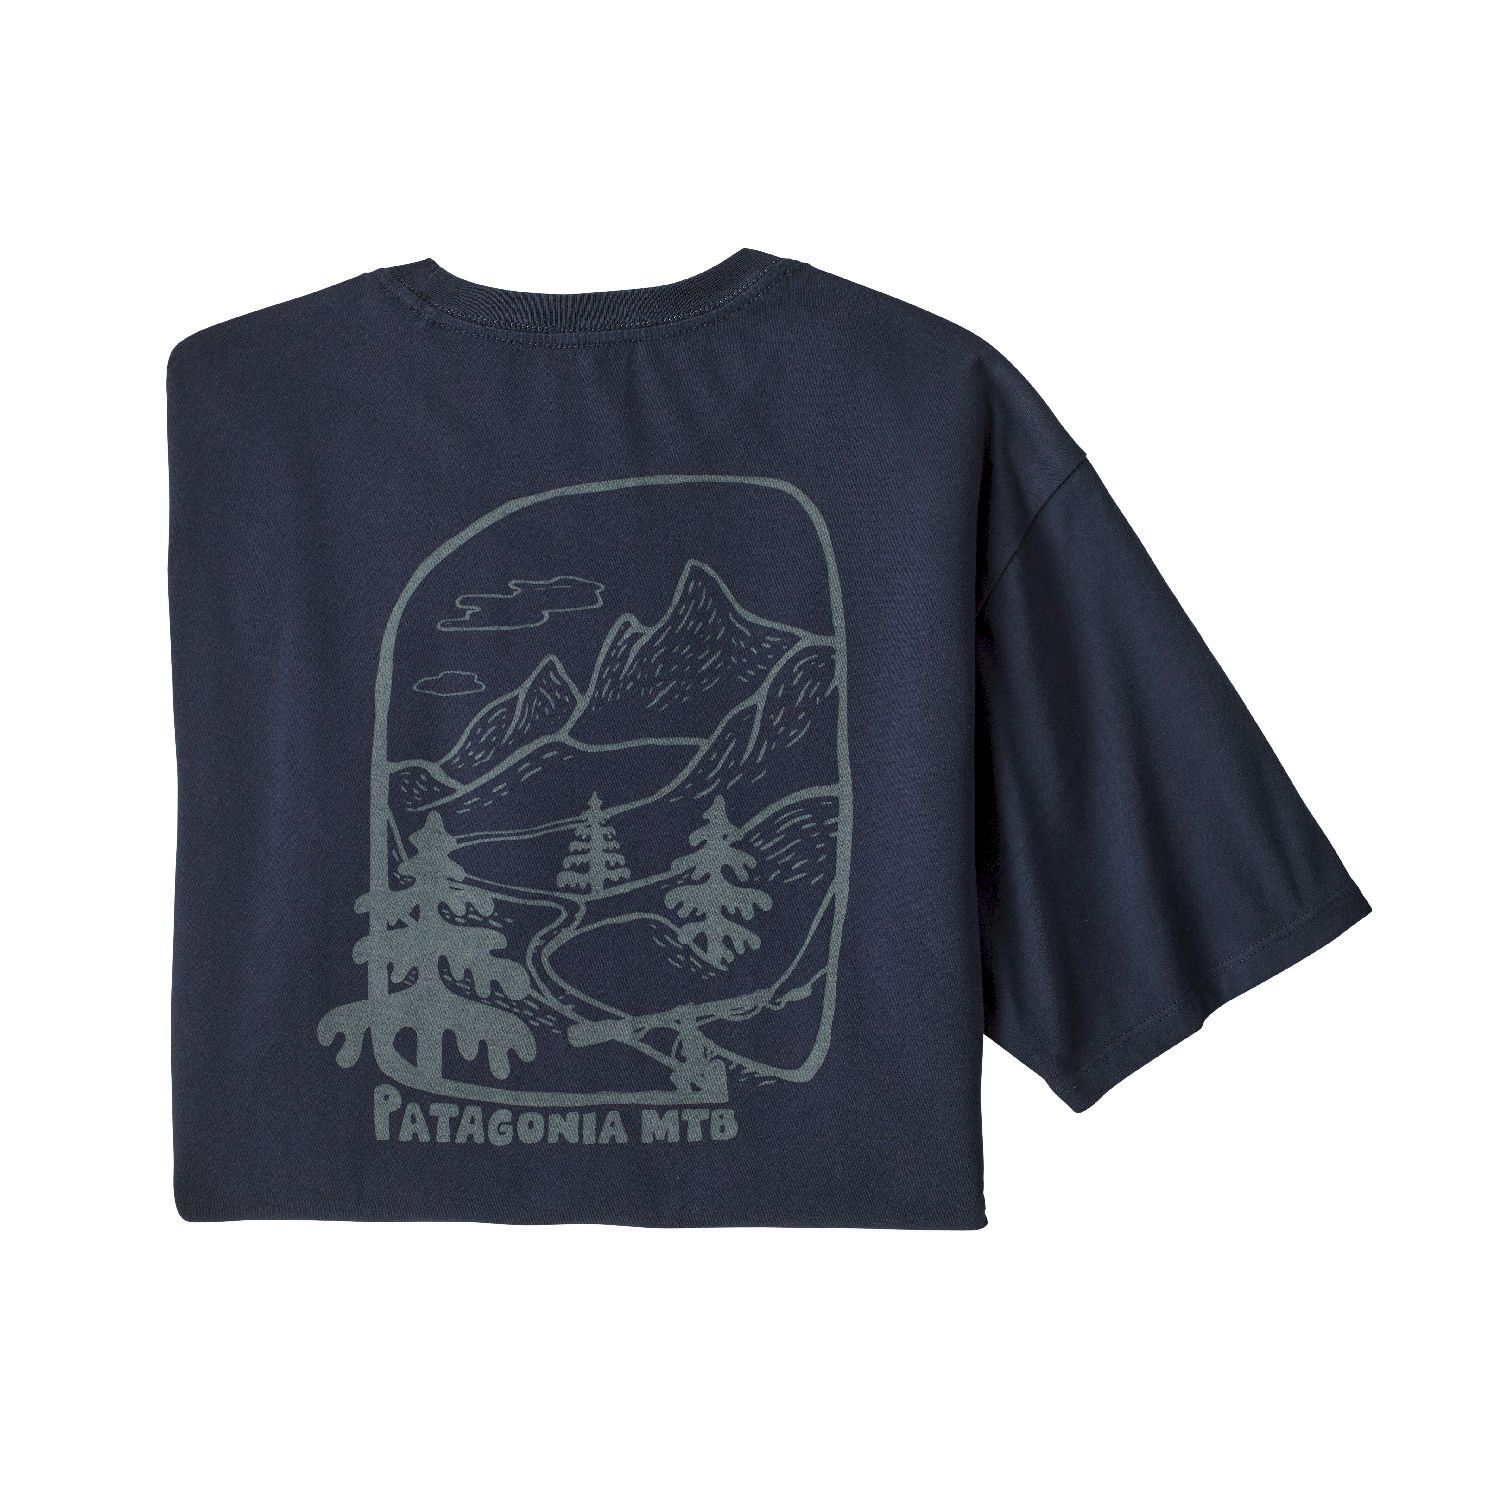 Patagonia Roam the Dirt Organic - T-shirt Herrer